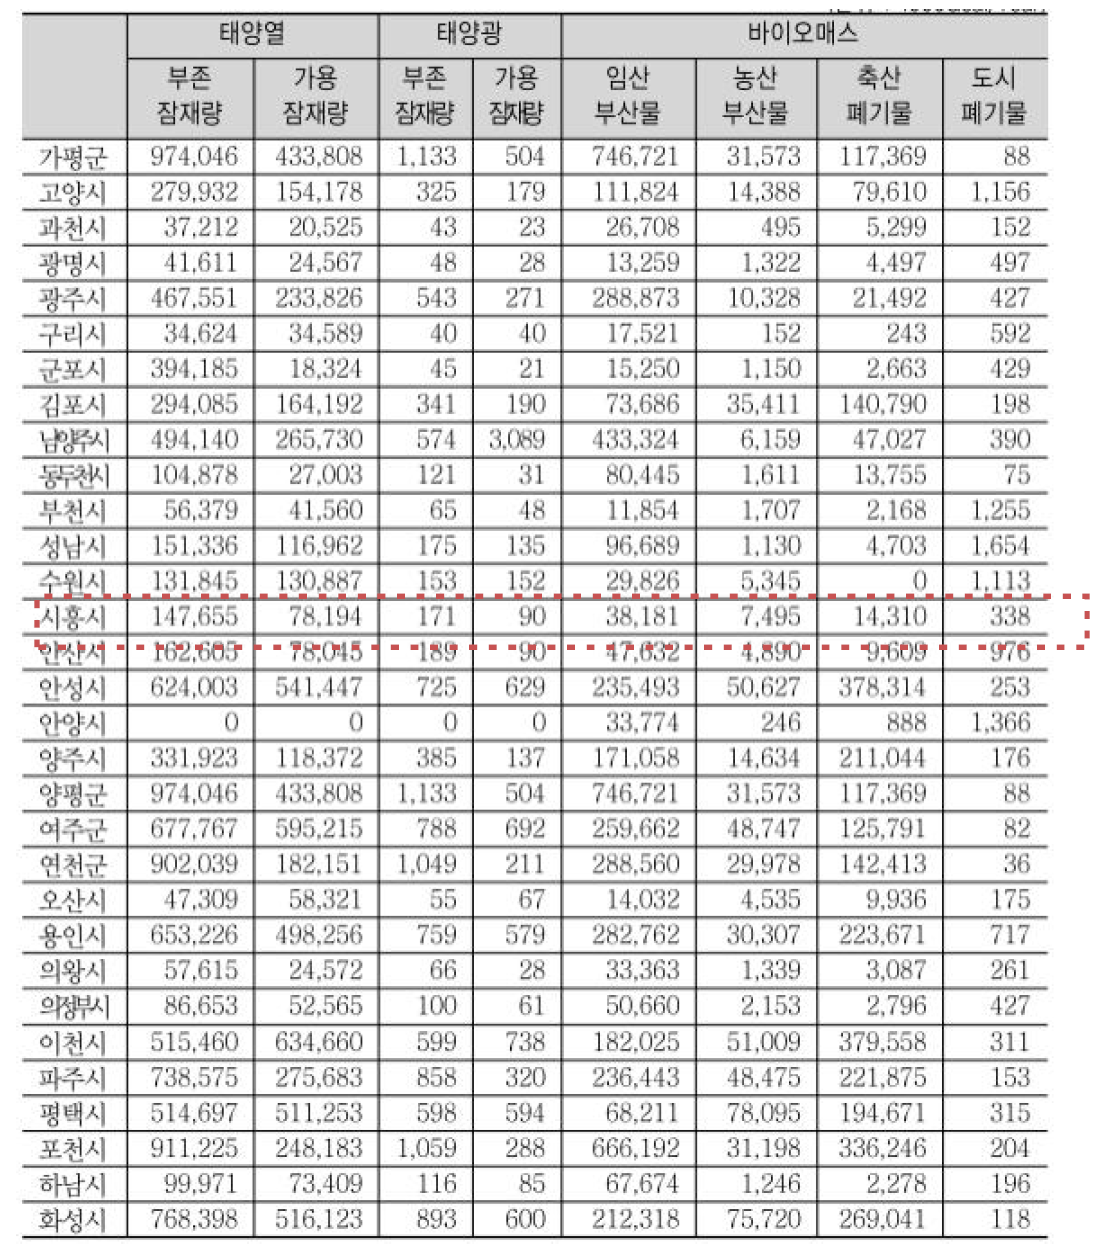 경기도 지역별 신재생에너지원별 잠재량 통계